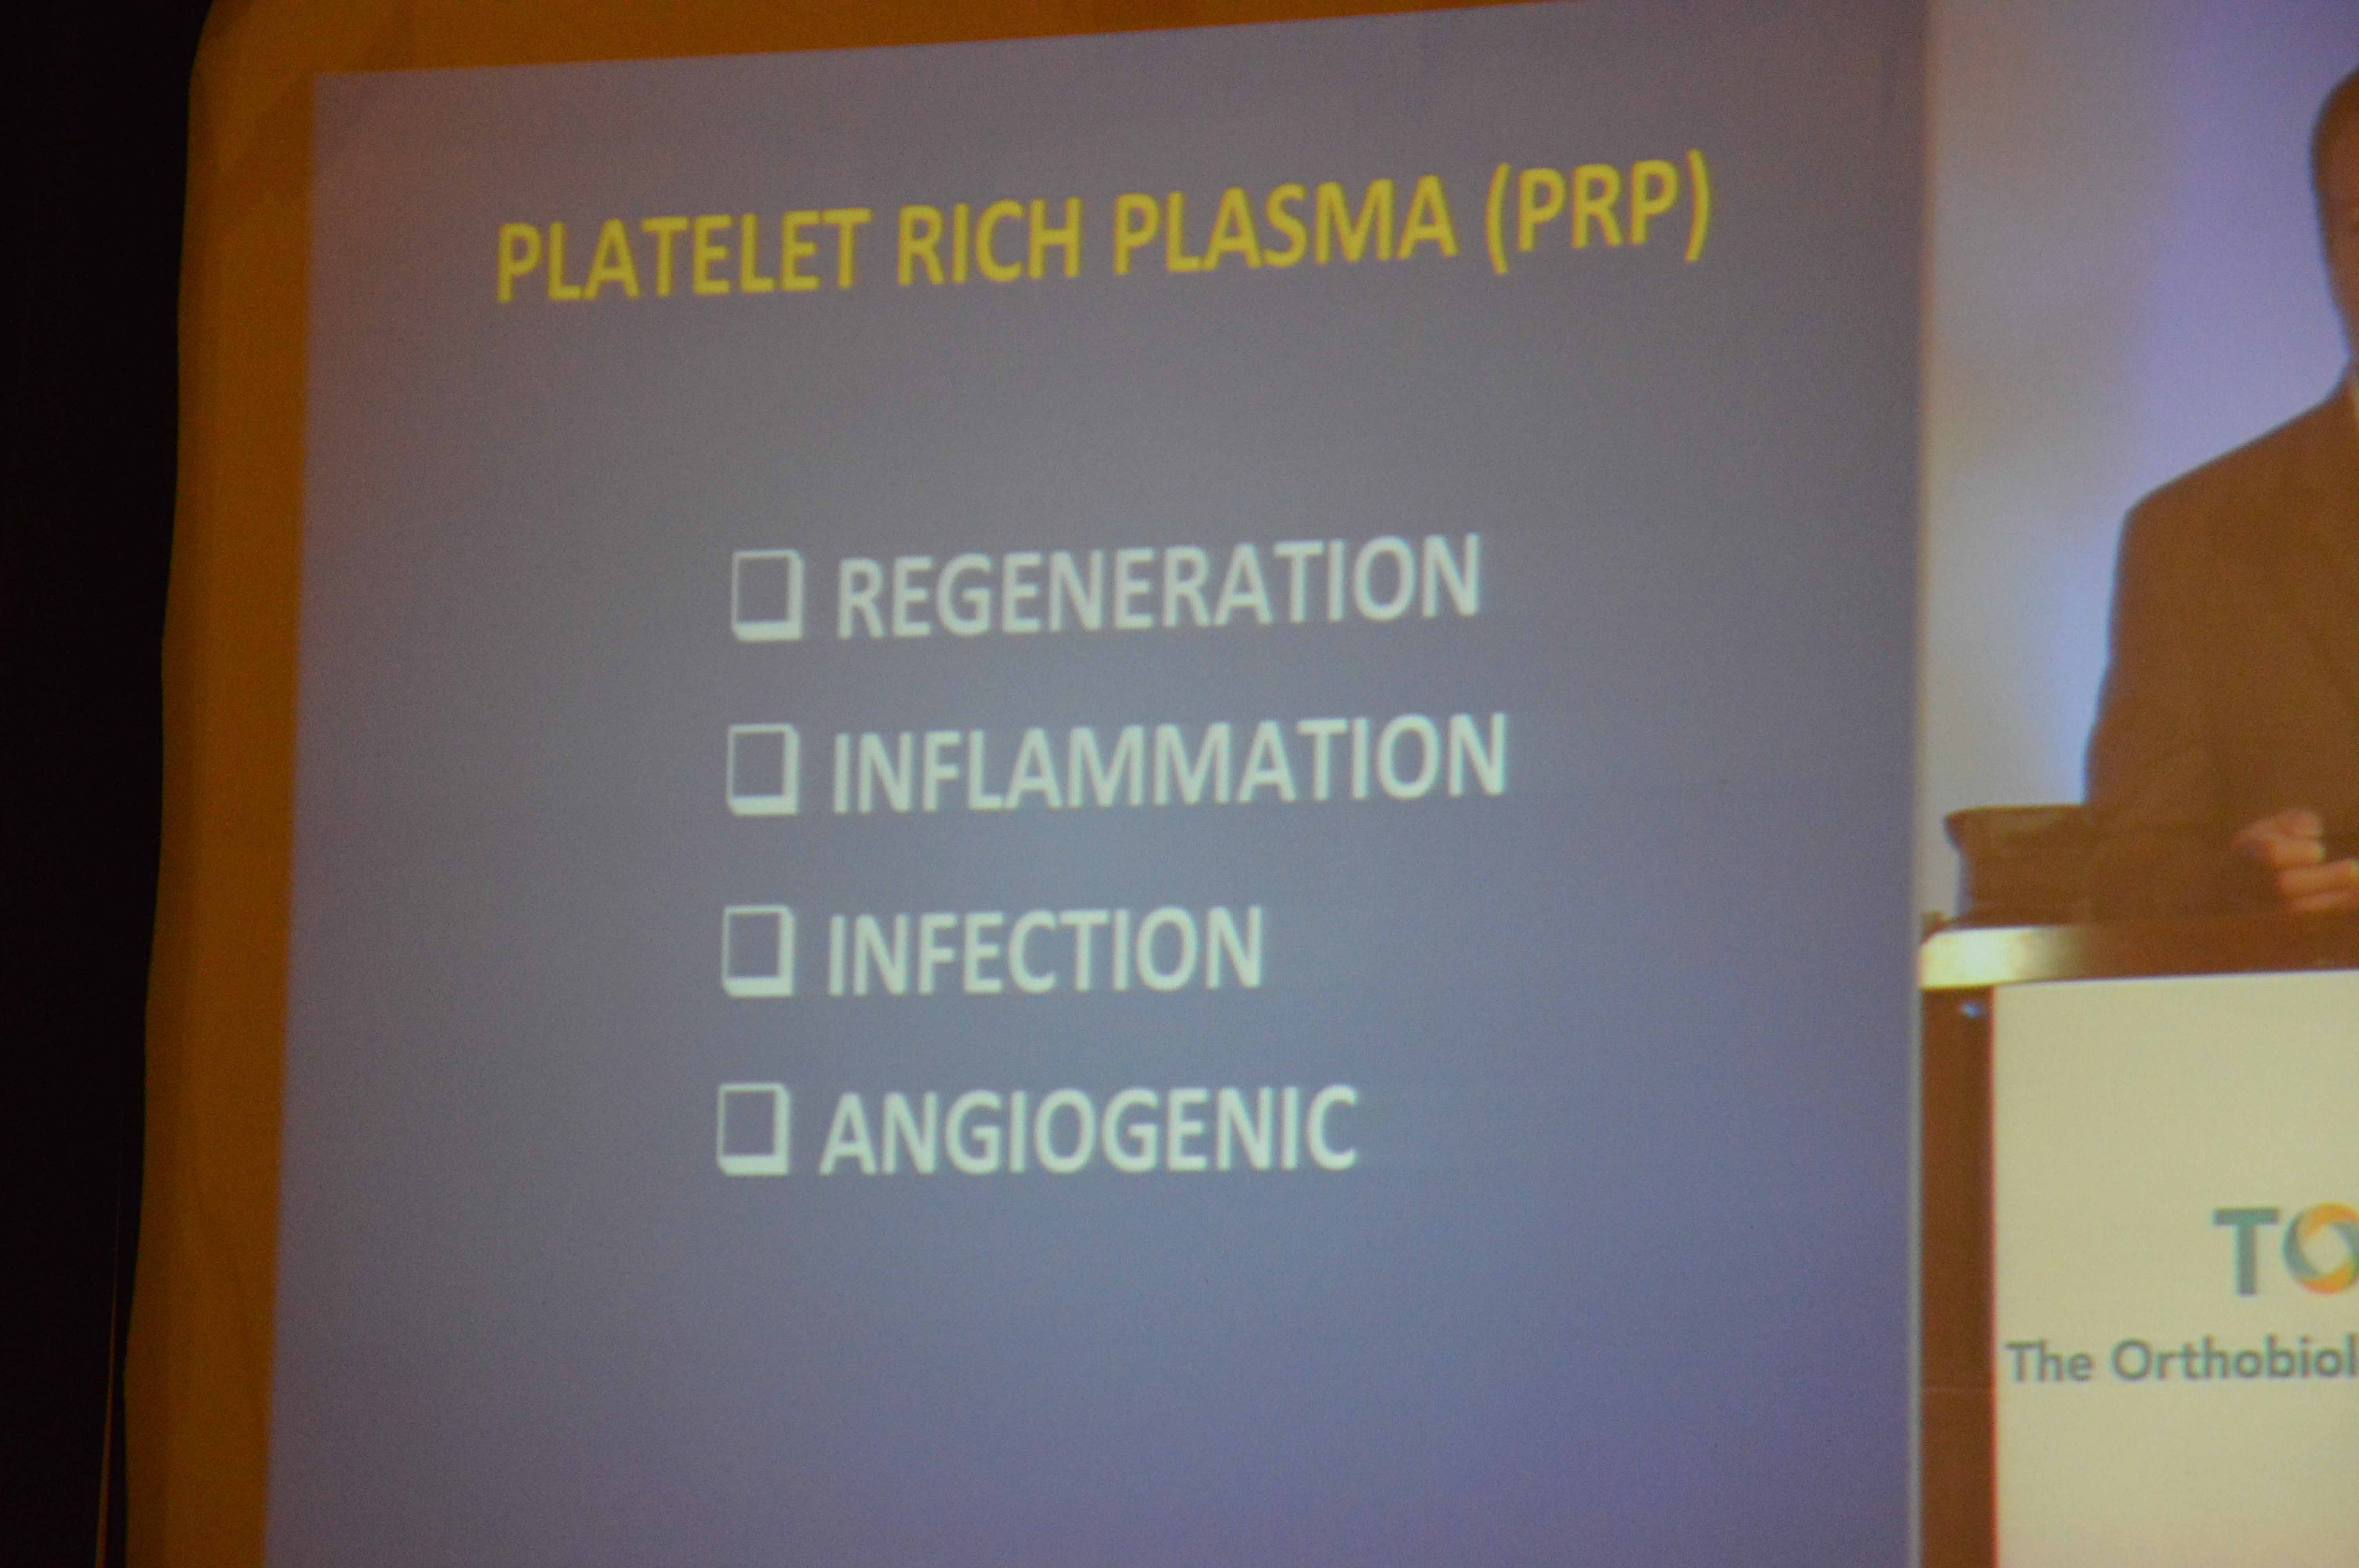 Dr. PRP at The 5th Annual PRP Regenerative Medicine Symposium (Updates)